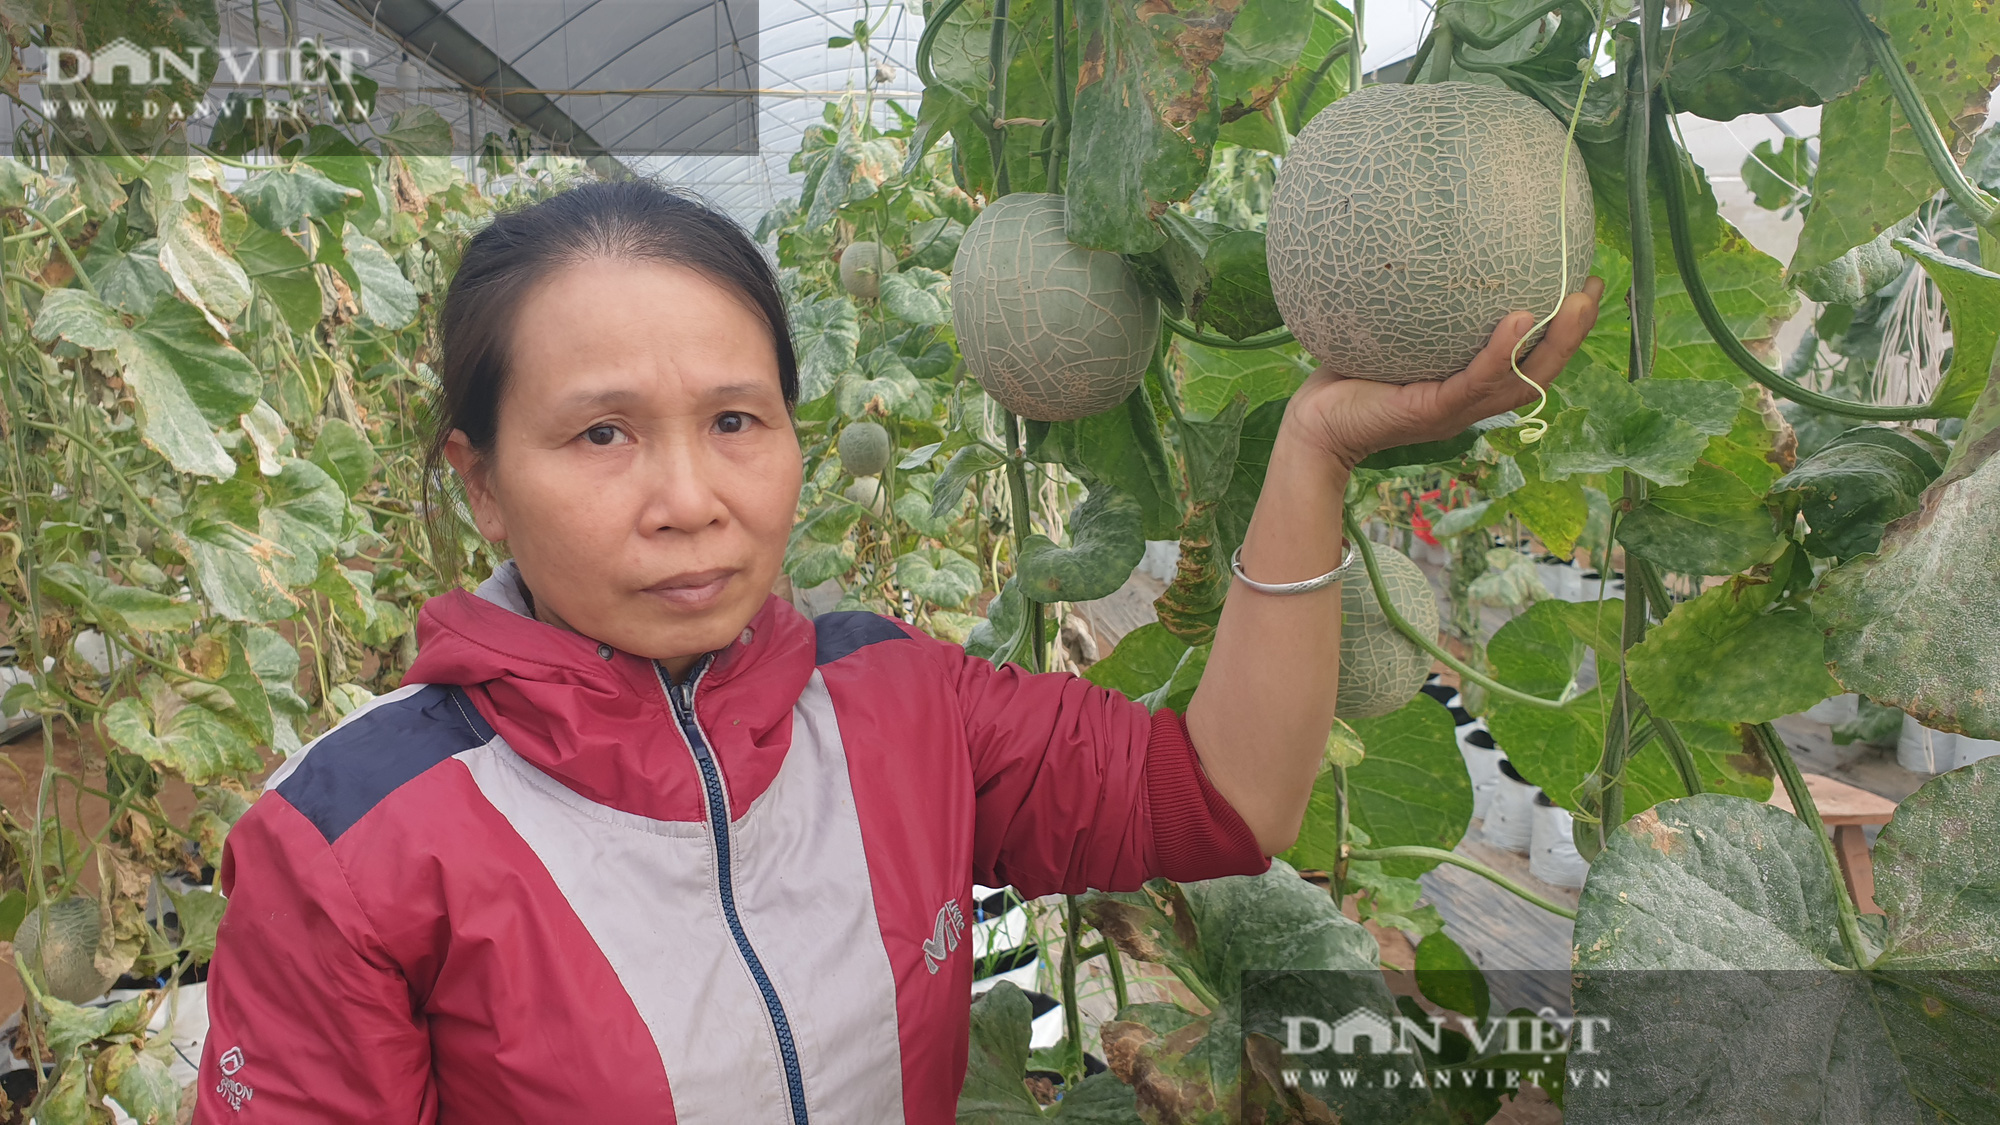 Thái Bình: Đam mê trồng dưa công nghệ cao, U50 bỏ túi hơn nửa tỷ đồng/năm - Ảnh 4.